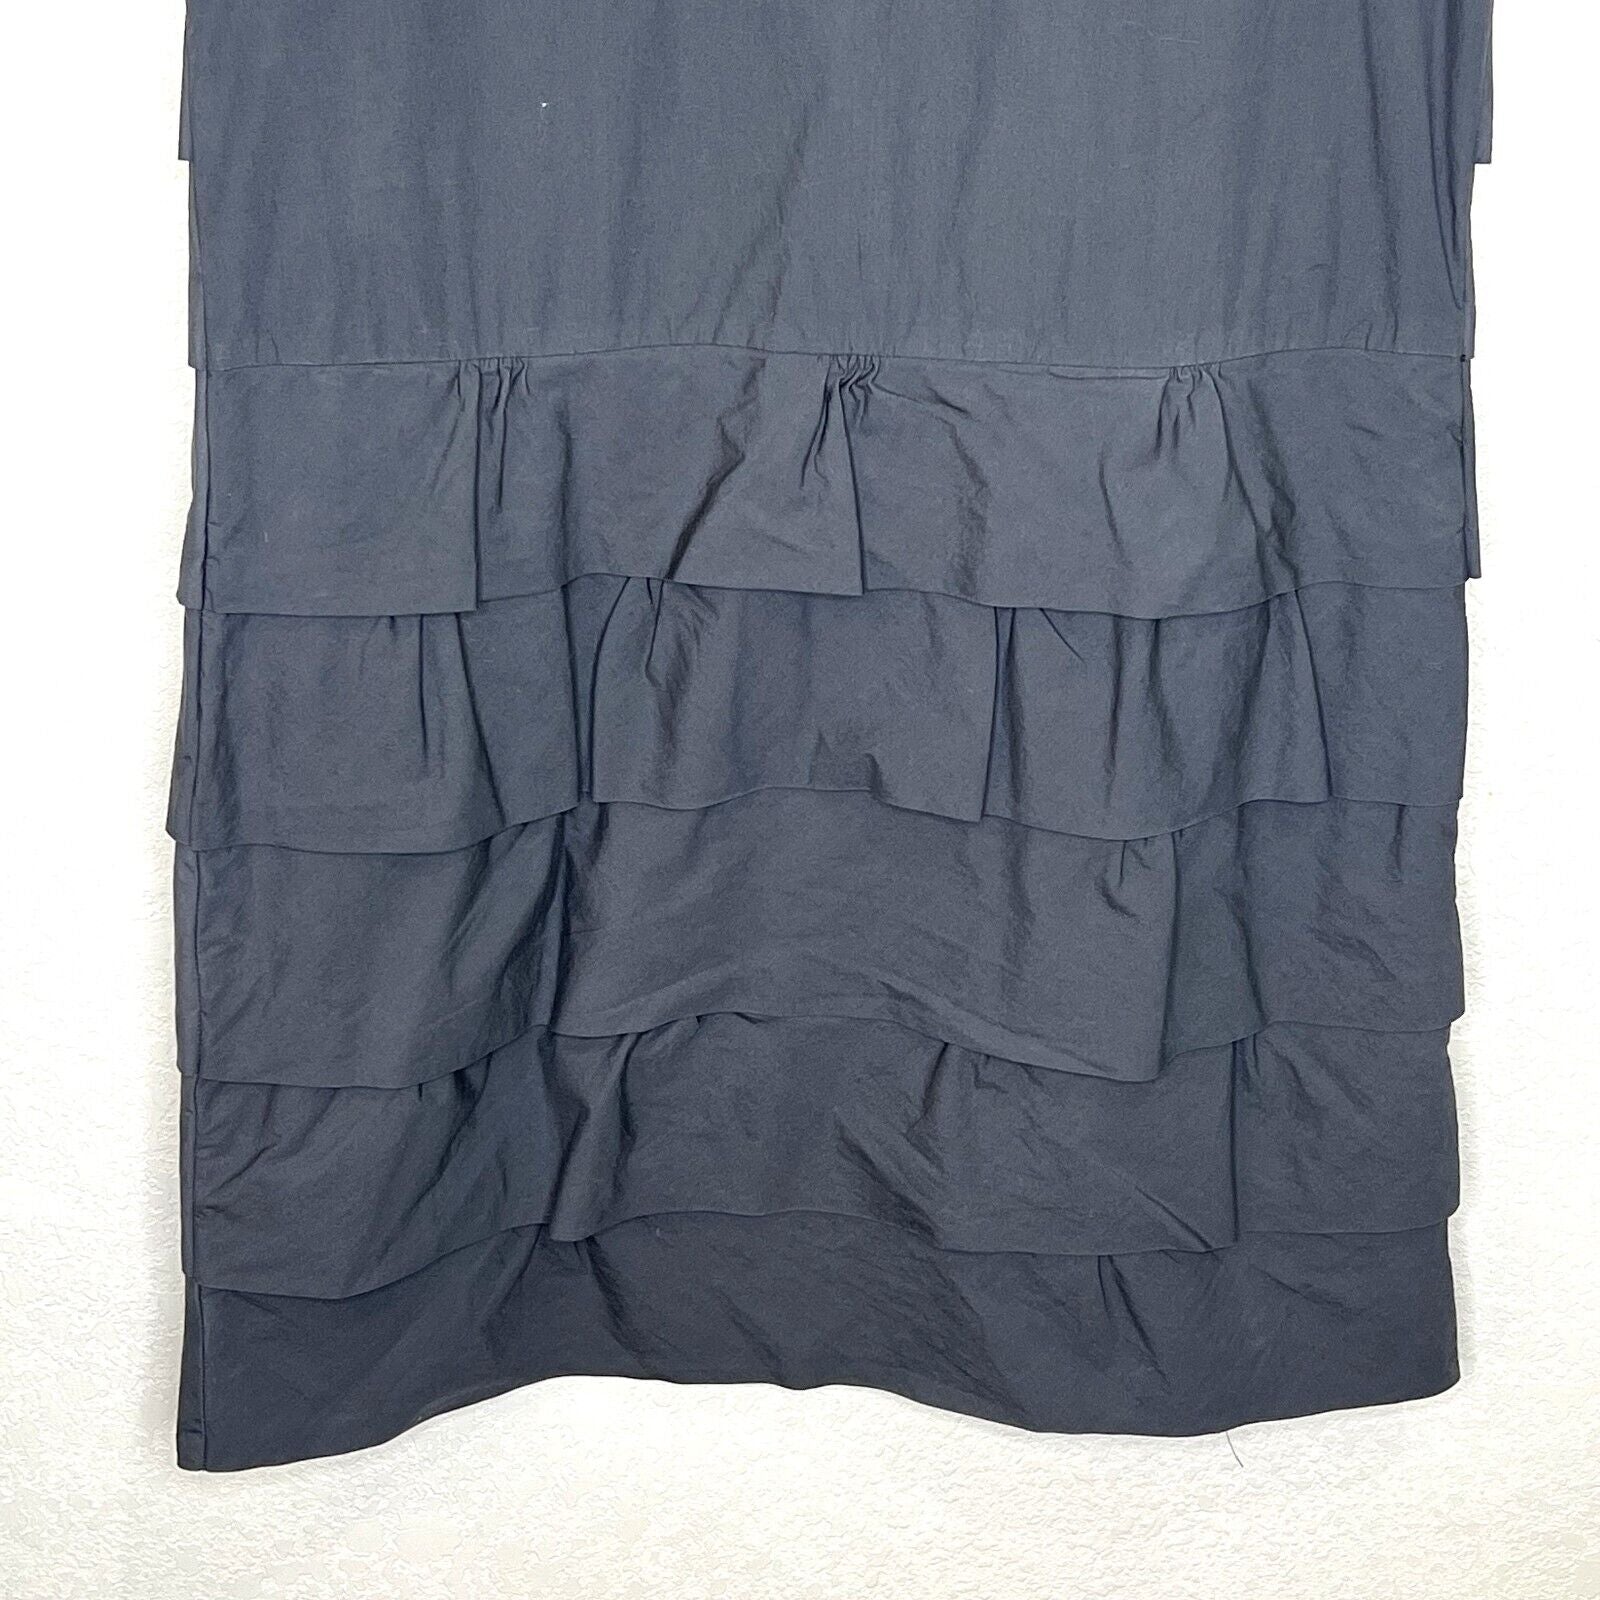 J. Crew Gray Ruffle Cotton Shift Dress 2010 Size 4